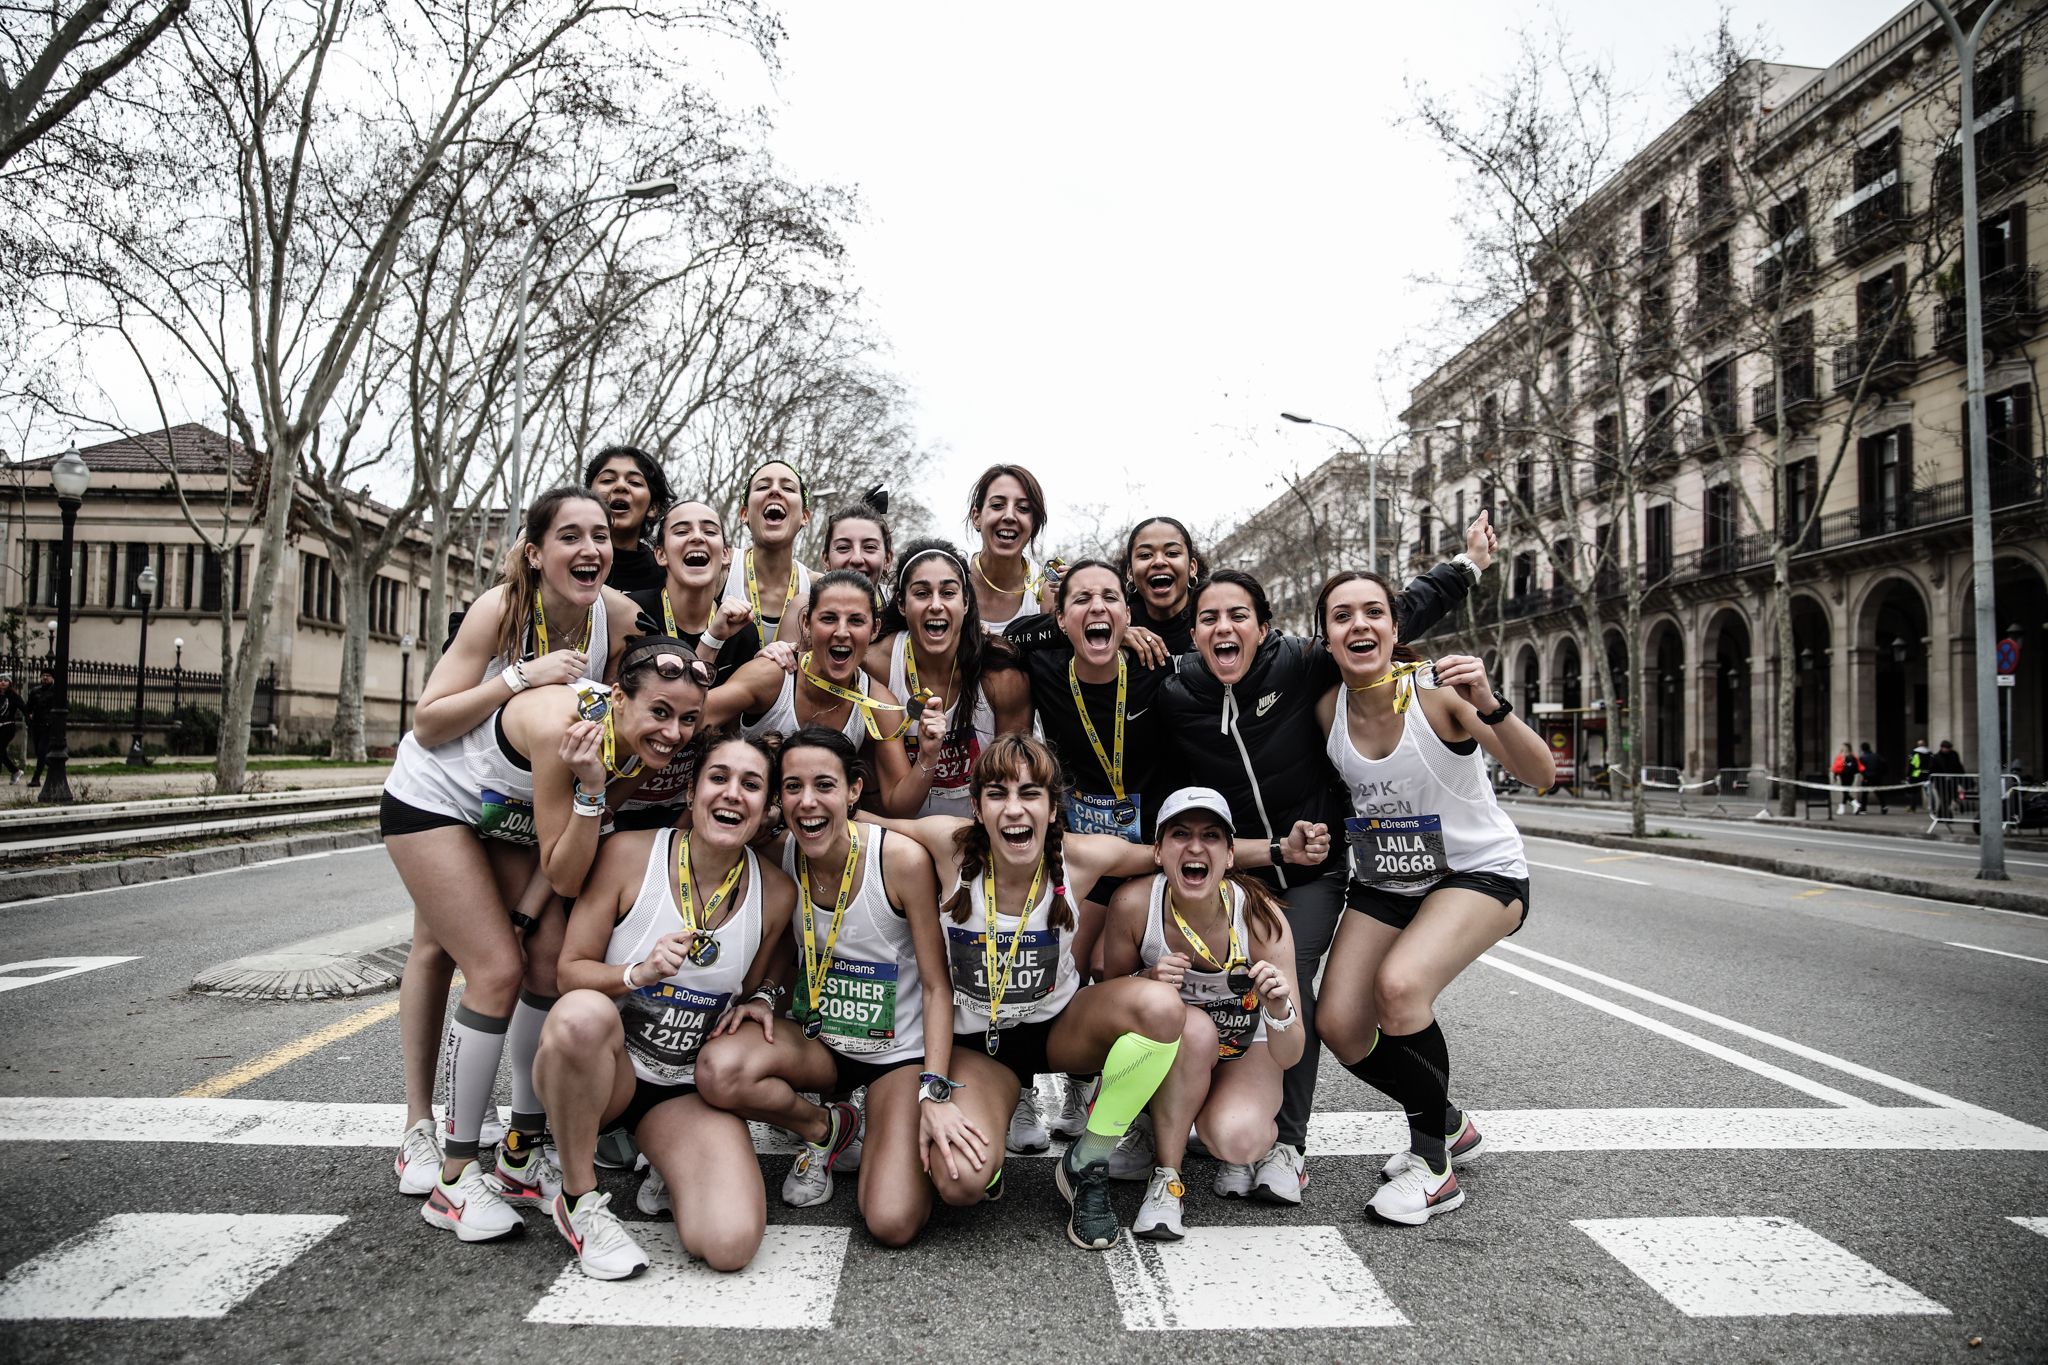 Instalación Mamut explosión Así unieron 21 km a 21 chicas de Barcelona - Mírame la espalda